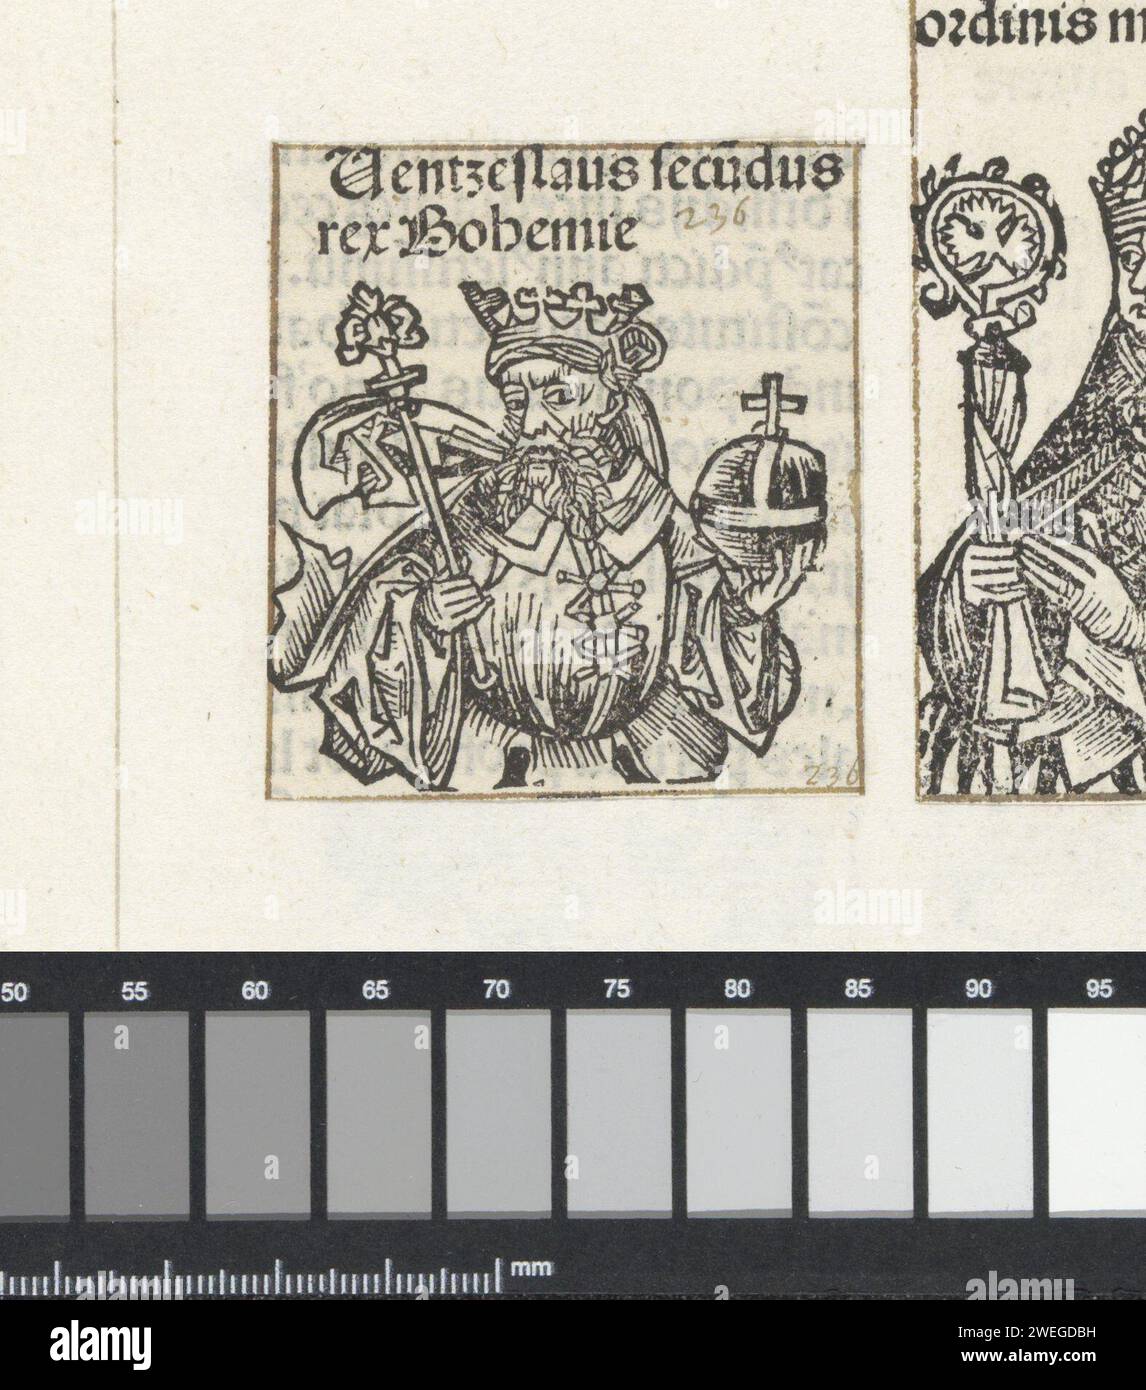 Re Venceslao II van Bohemen, Michel Wolgemut (laboratorio di), 1493 stampare Un calice di fiori con un re. Ha uno scettro e una mela del governo nelle sue mani. Il testo identifica l'uomo come Venceslao II di Boemia. La stampa fa parte di un album. carta da lettera per la stampa king Foto Stock